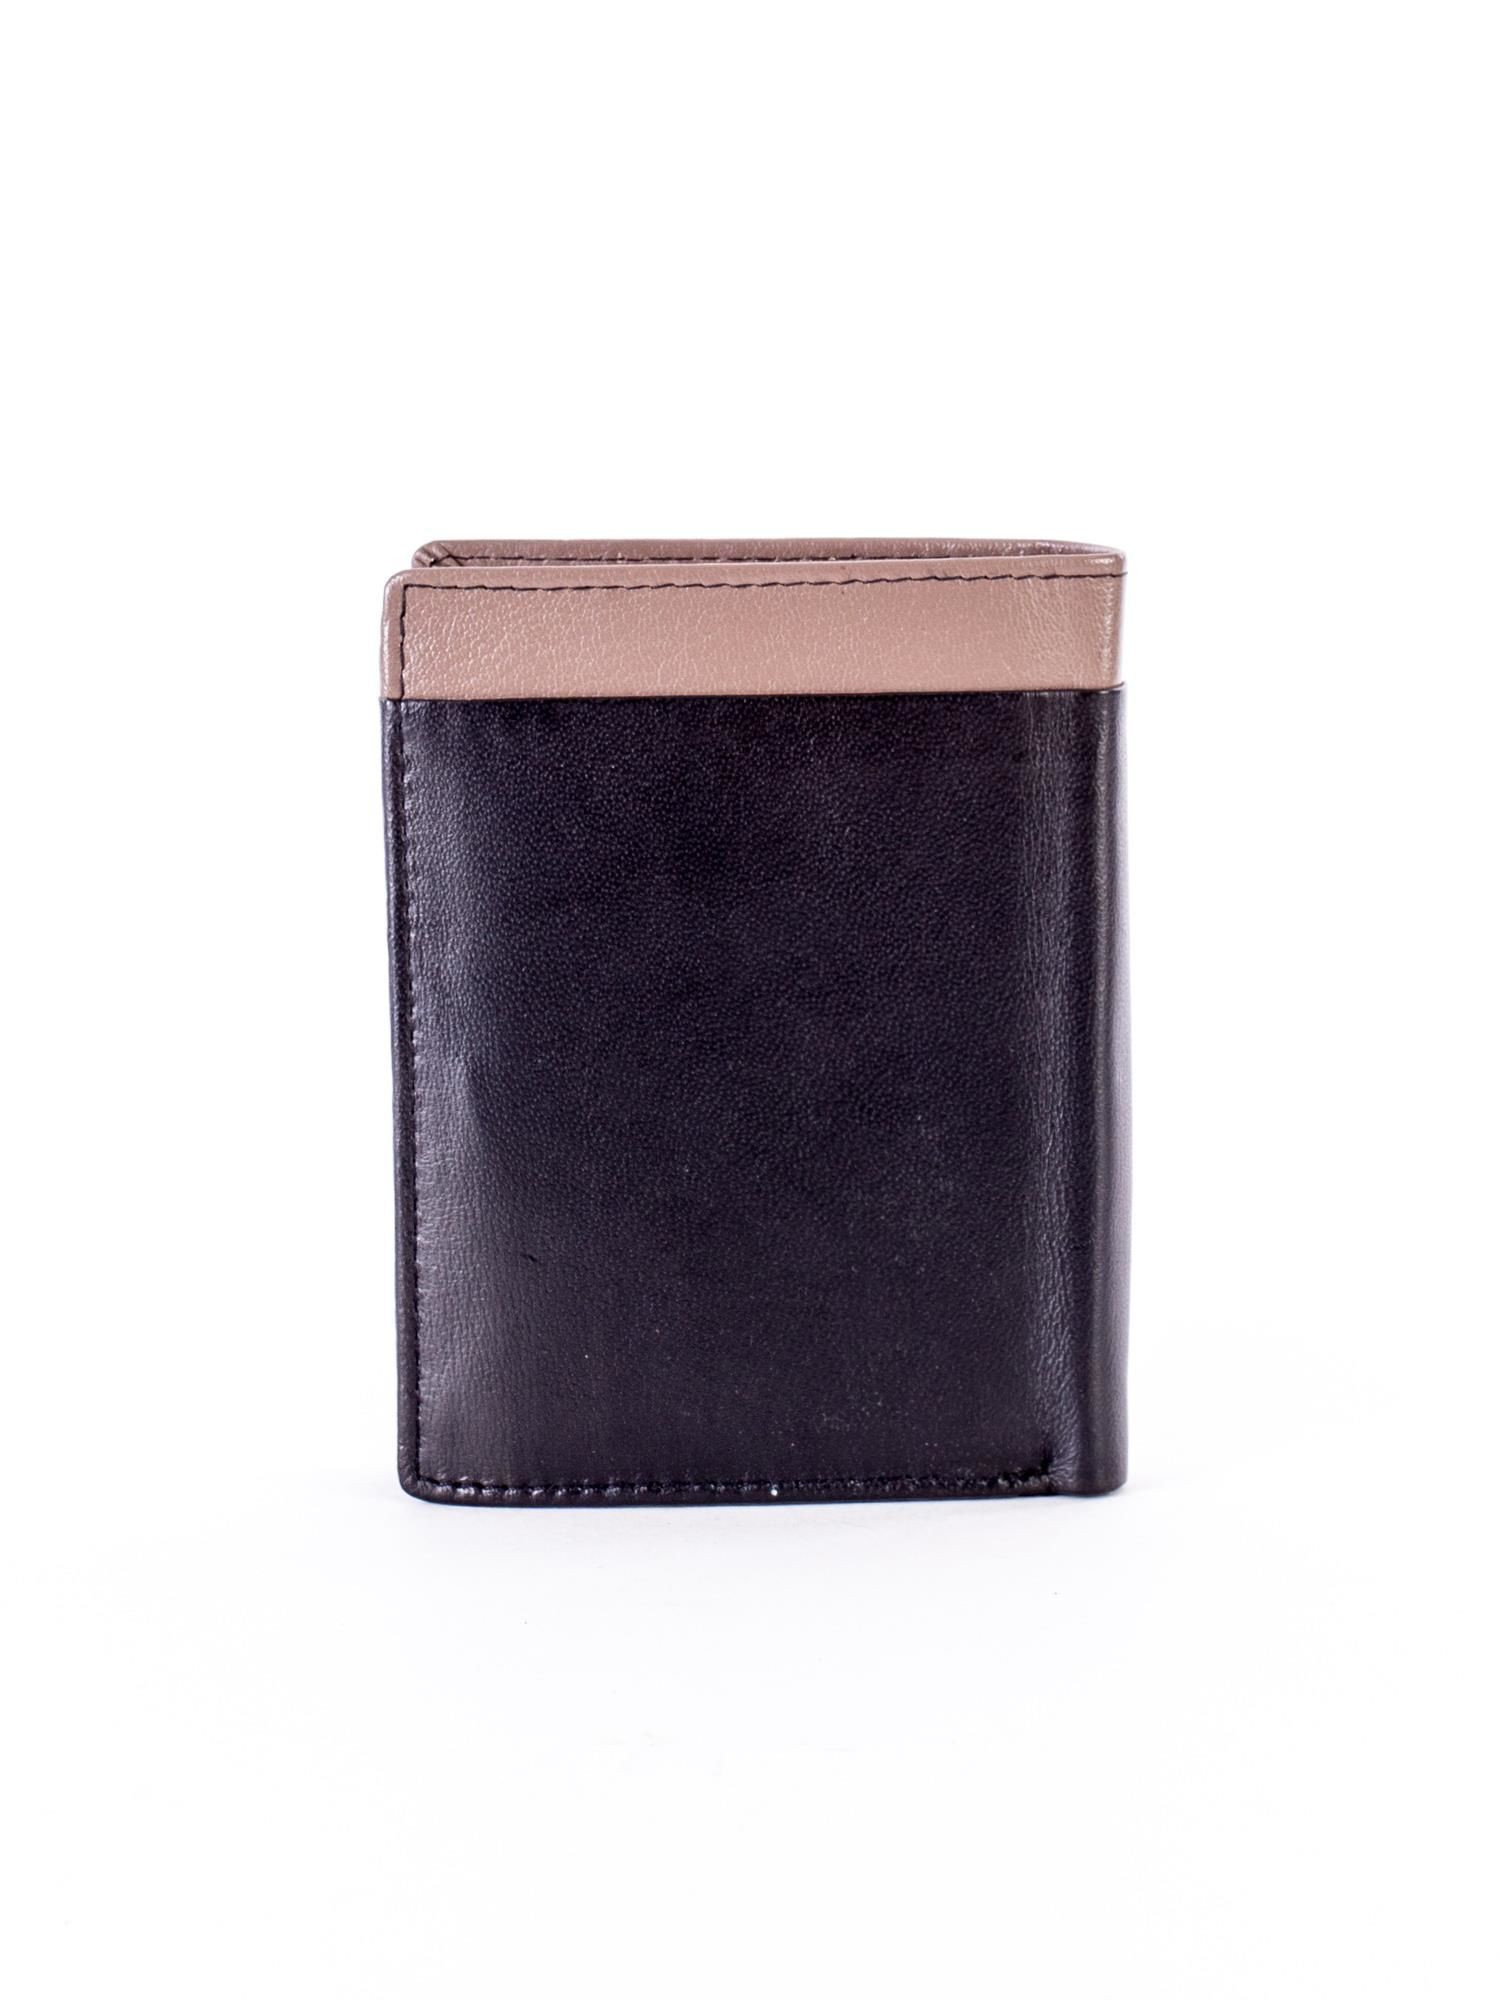 CE PR 326 FS peněženka.74 černá a béžová jedna velikost